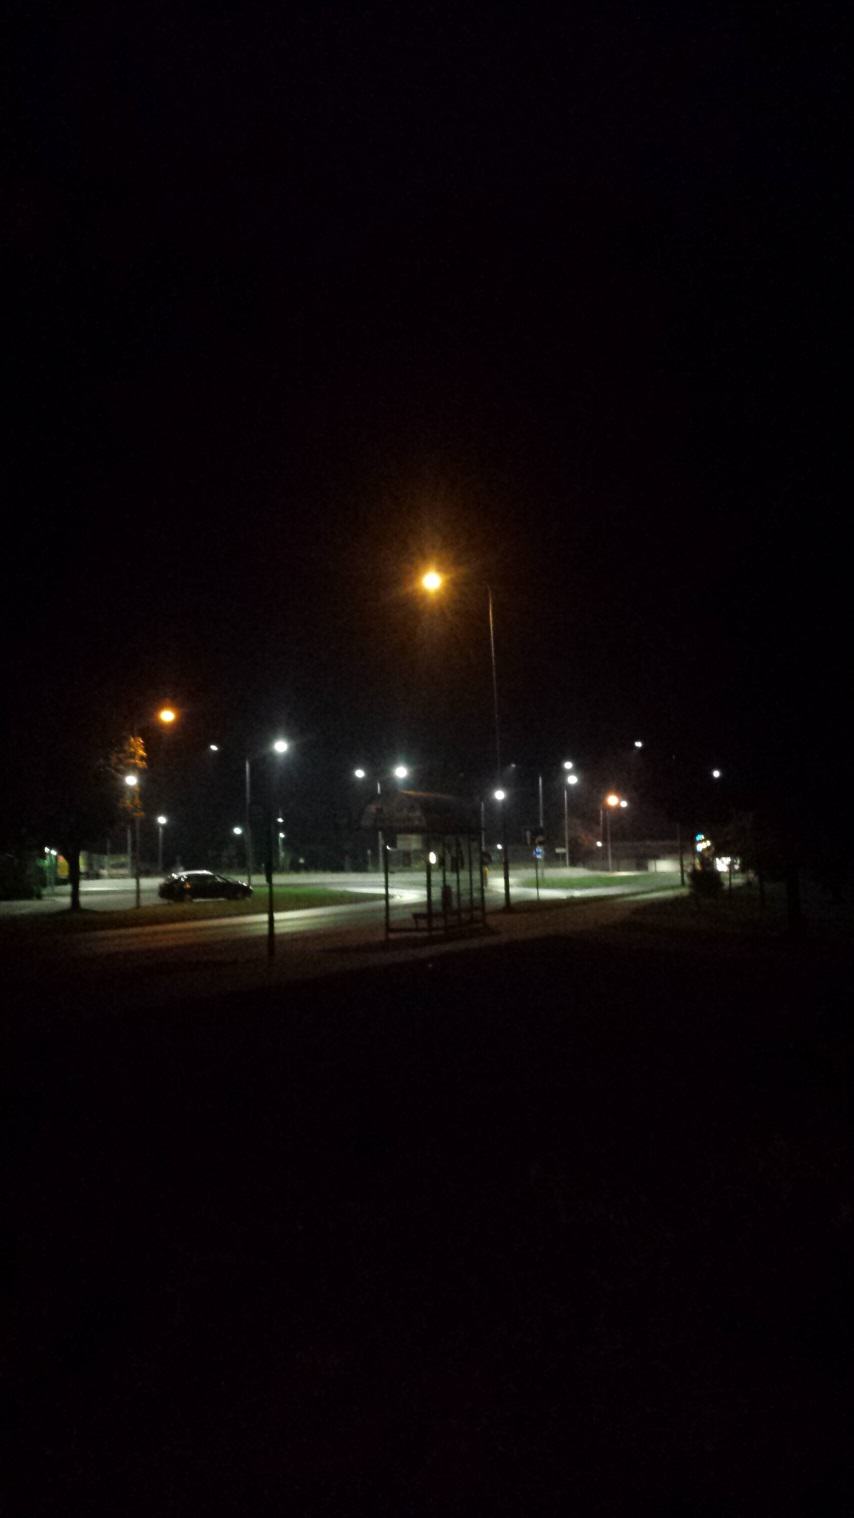 Zdjęcie, które przedstawia nowoczesne rozwiązanie problemu zanieczyszczania środowiska światłem. Rondo oświetlone, droga widoczna, dookoła ciemność. Źródło własne.